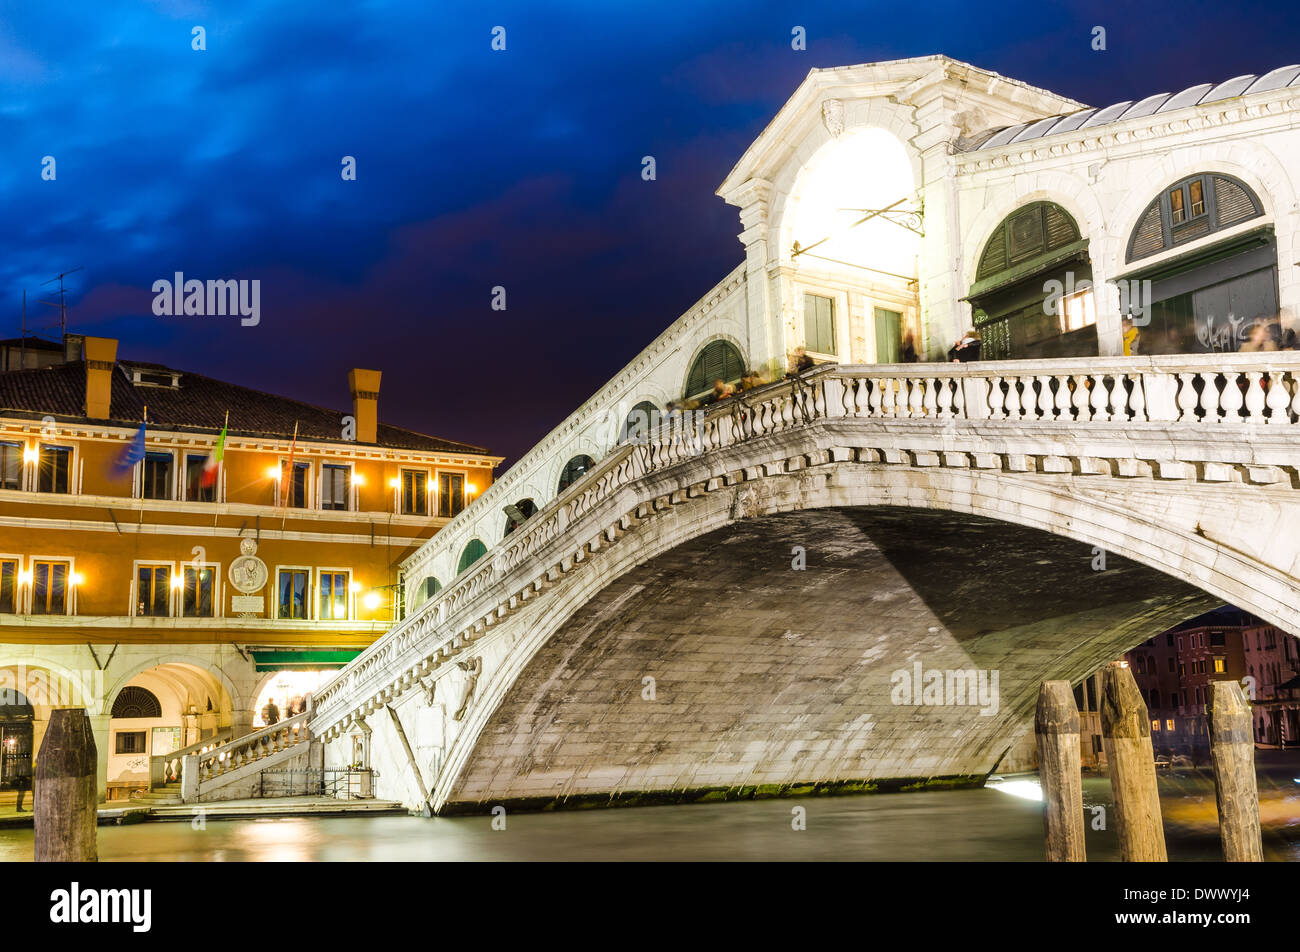 Venice, Italy. Rialto Bridge, Ponte di Rialto, famous touristic attraction in city, medieval architecture, twilight view. Stock Photo